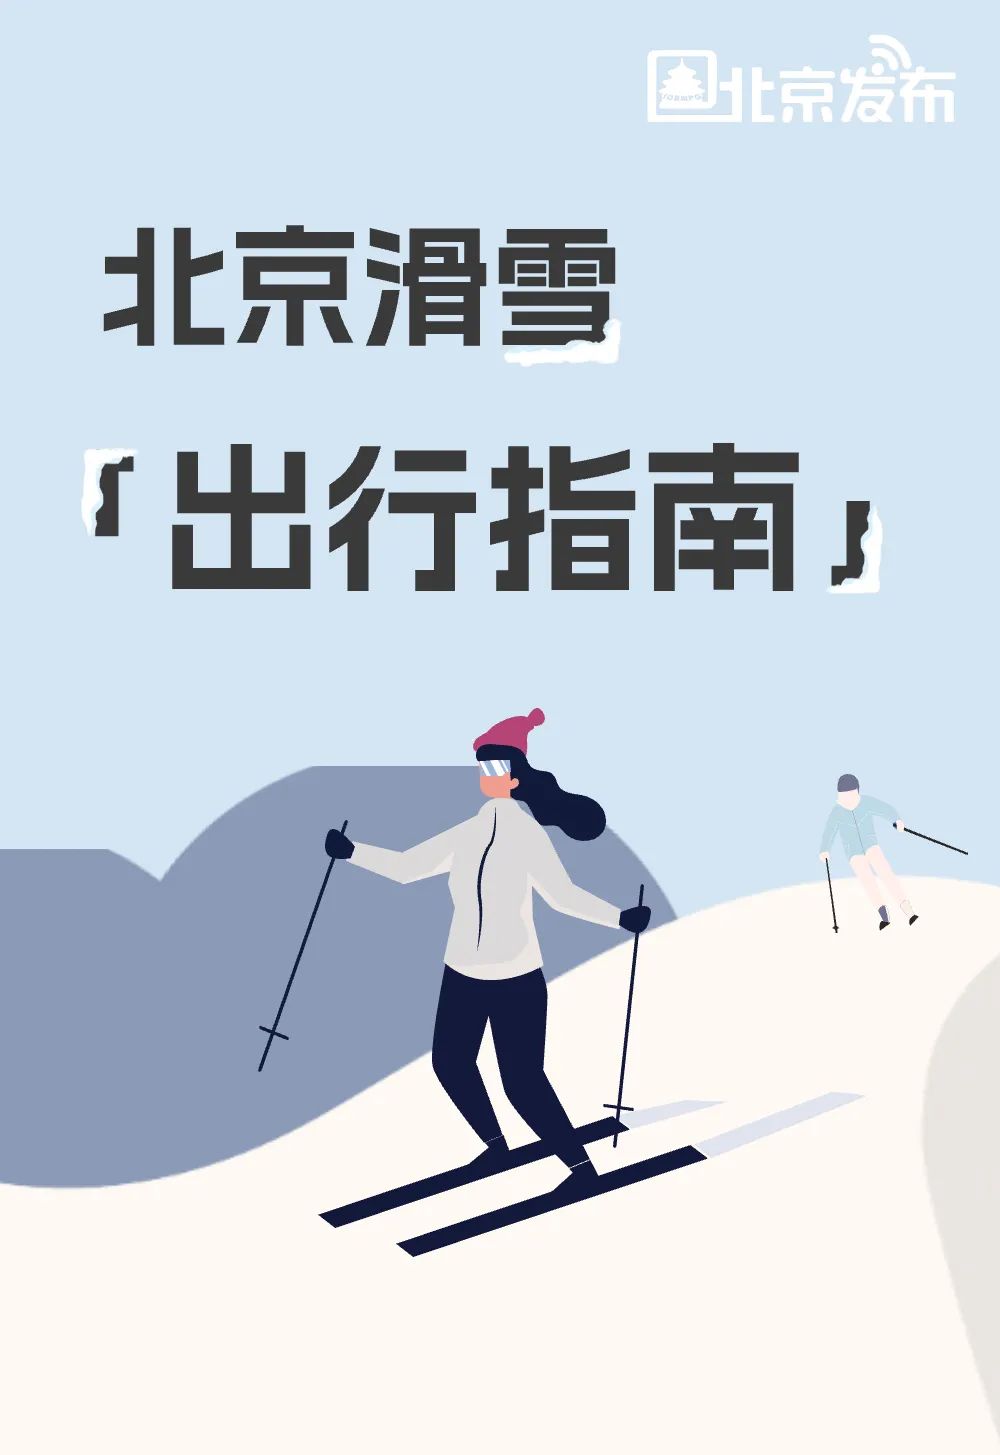 不滑雪，这个冬天算不算白过？你专属的冬季限定版《北京滑雪出行指南》来了！